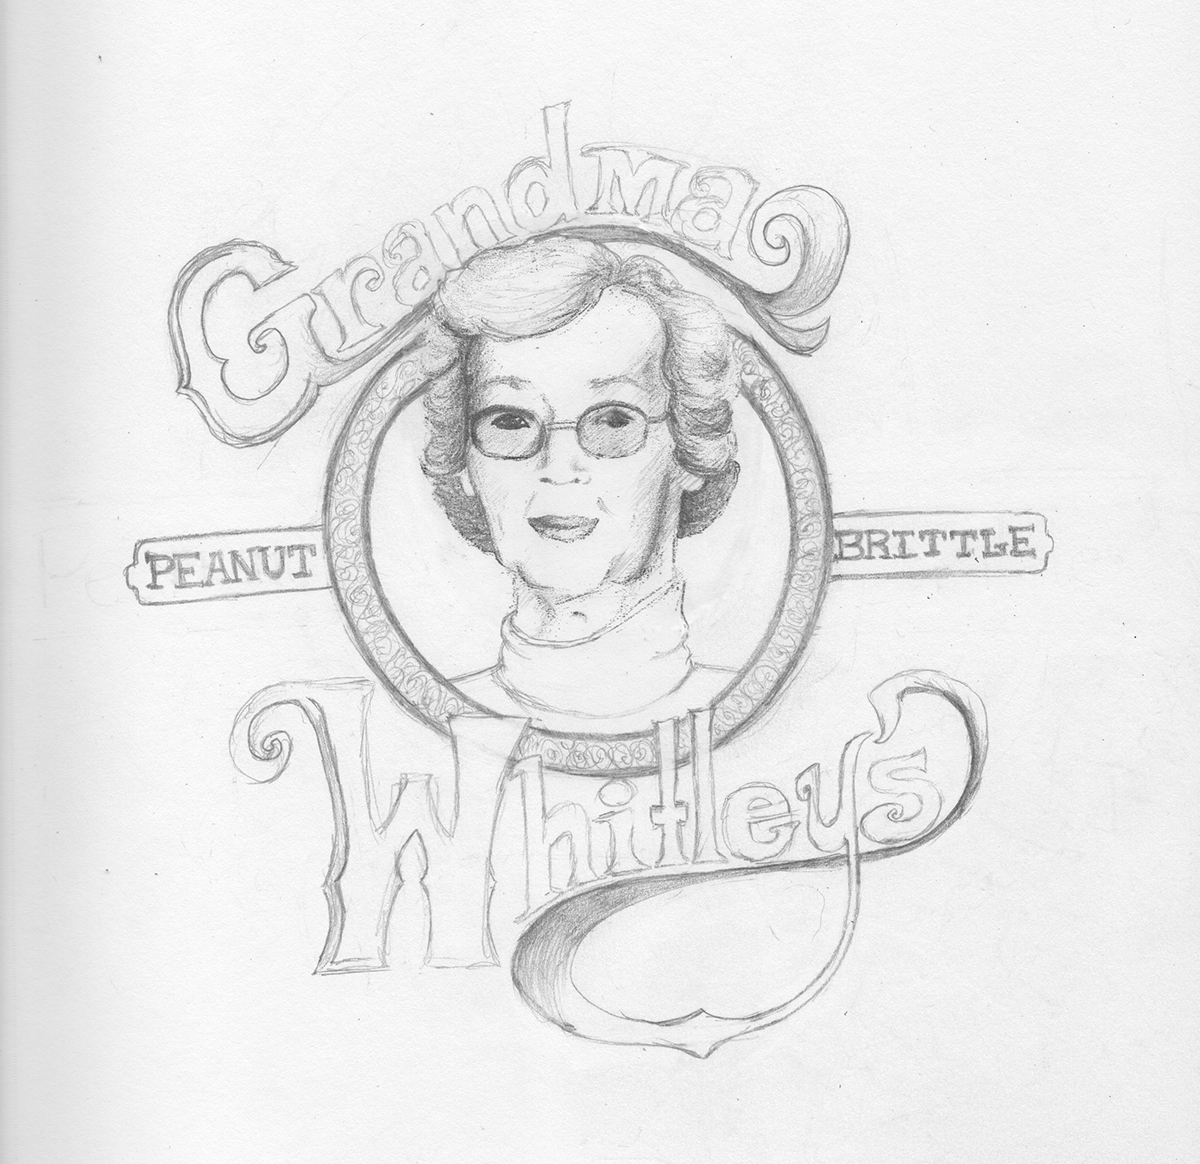 grandma whitley's  ashleigh meusel  meusel  ashleigh  logo  local  sketch